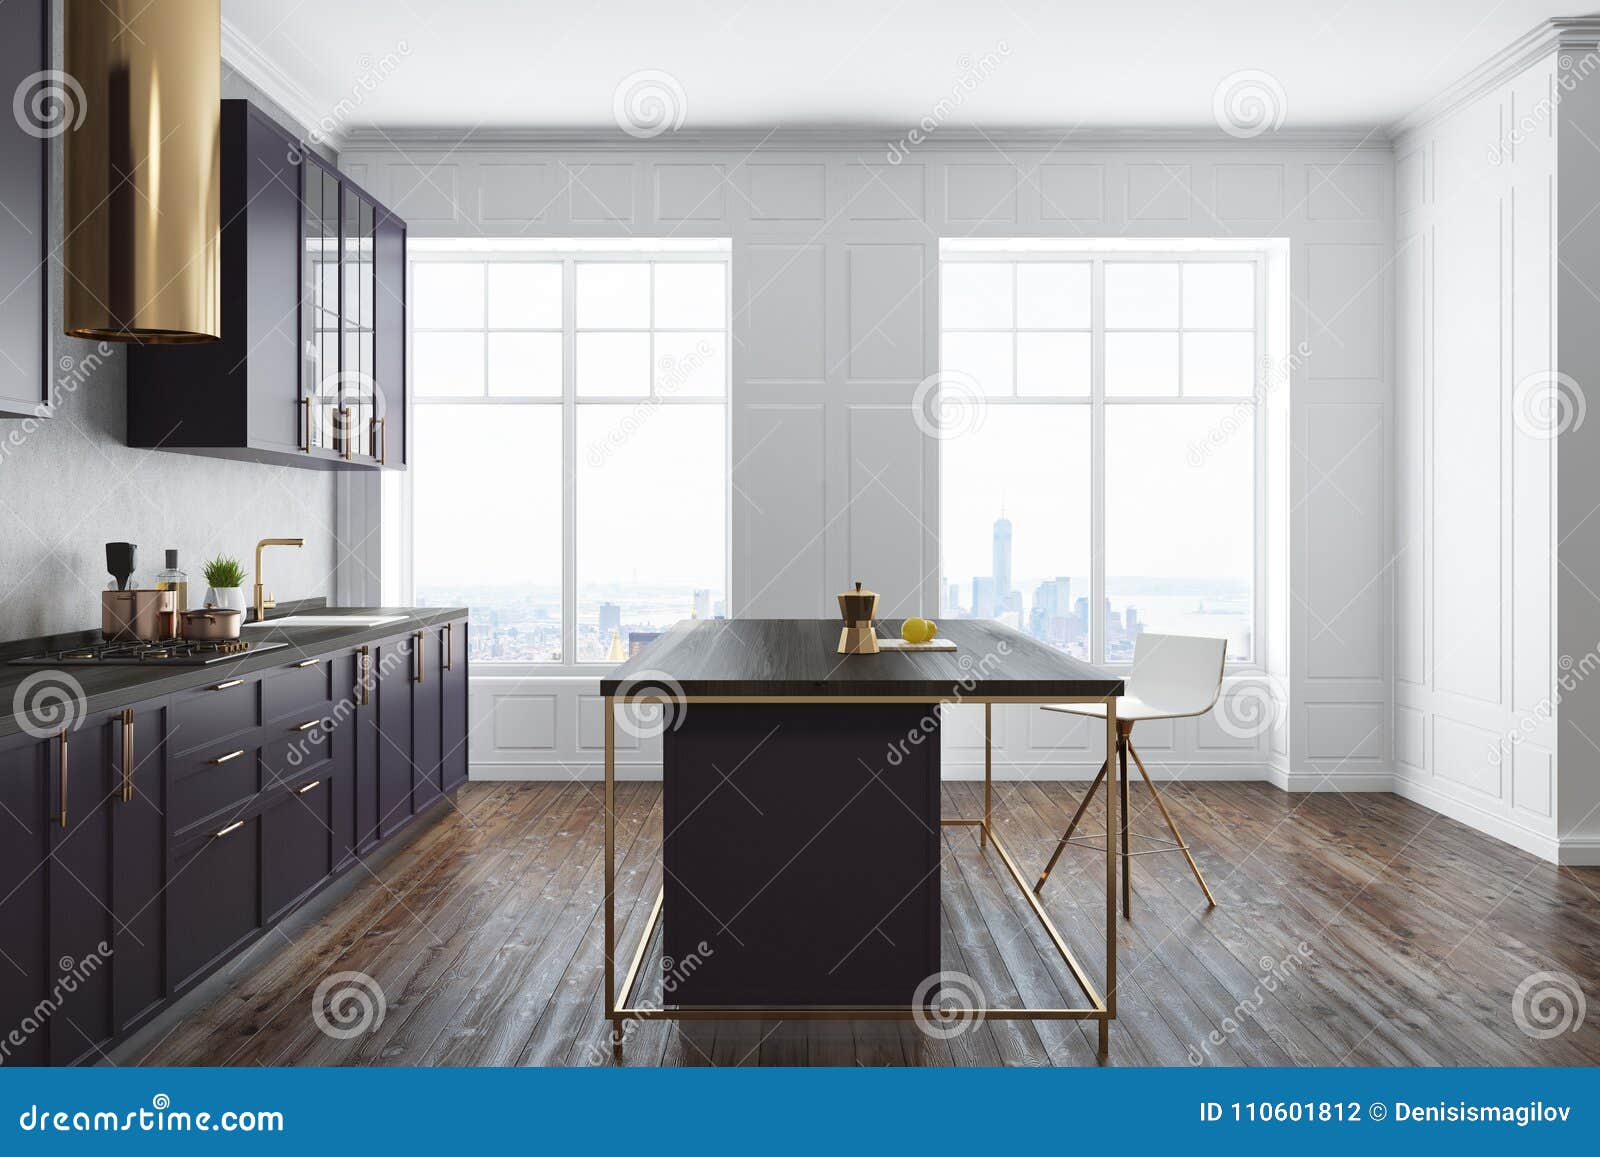 White Kitchen Purple Countertops Talbe Side White Concrete Wall Kitchen Interior Wooden Floor Dark Purple 110601812 